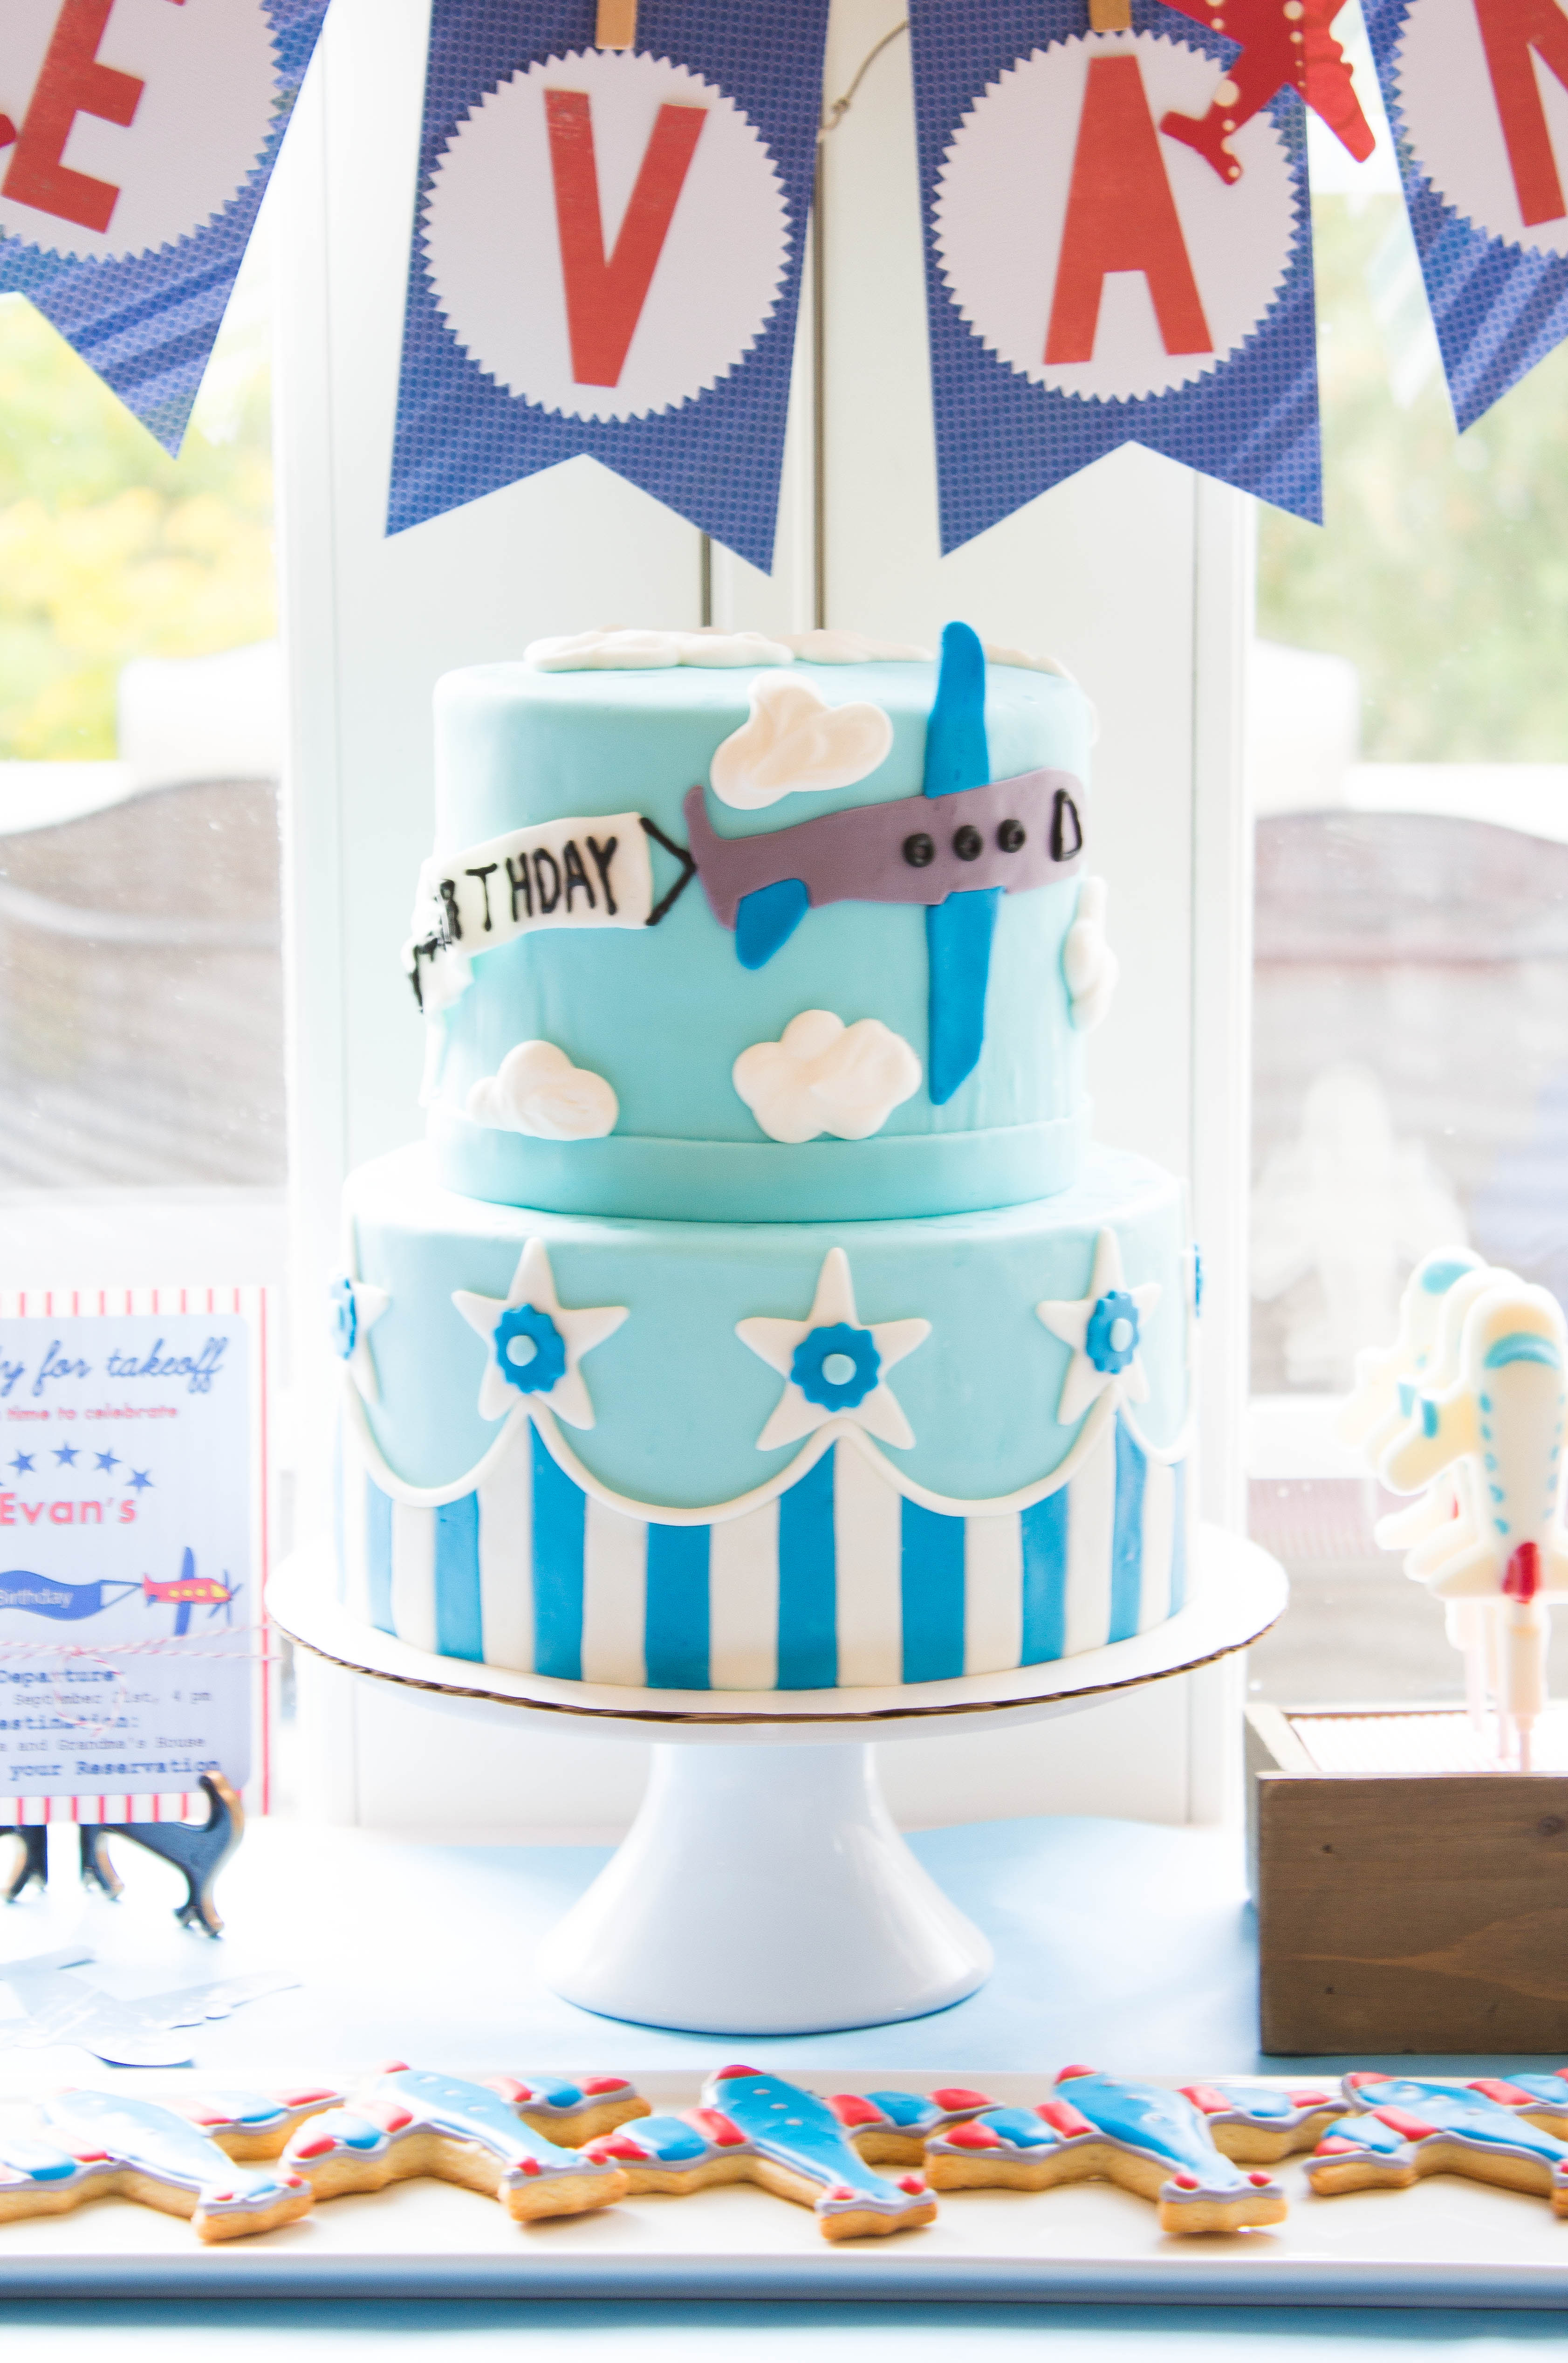 Plane cake Birthday - Decorated Cake by Donatella - CakesDecor